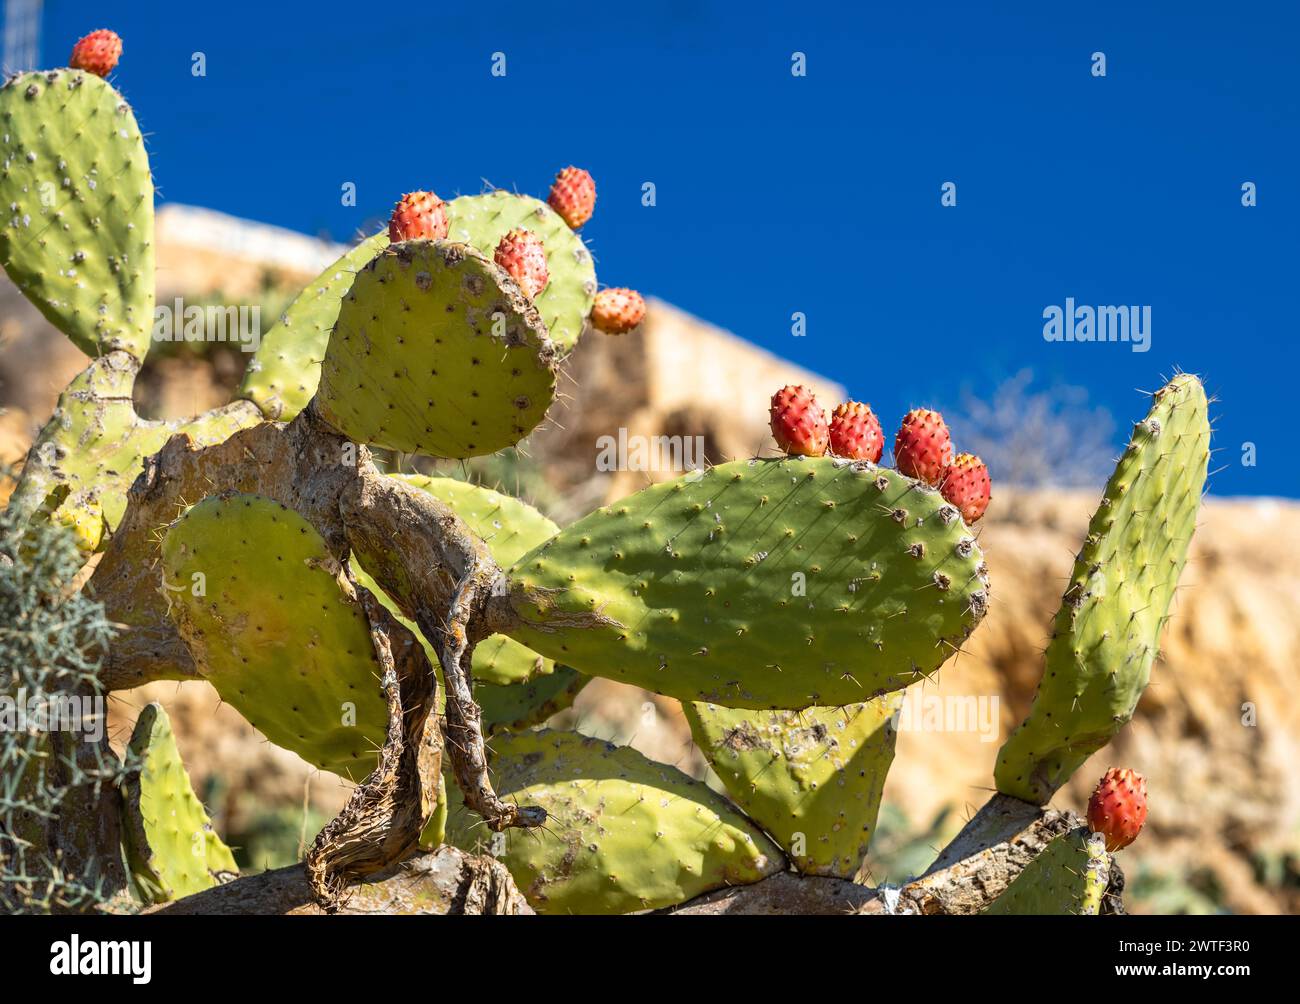 Feigenkaktus (Opuntia Ficus-indica) oder Berberfeige, die in Takrouna, Tunesien, wächst. Stockfoto